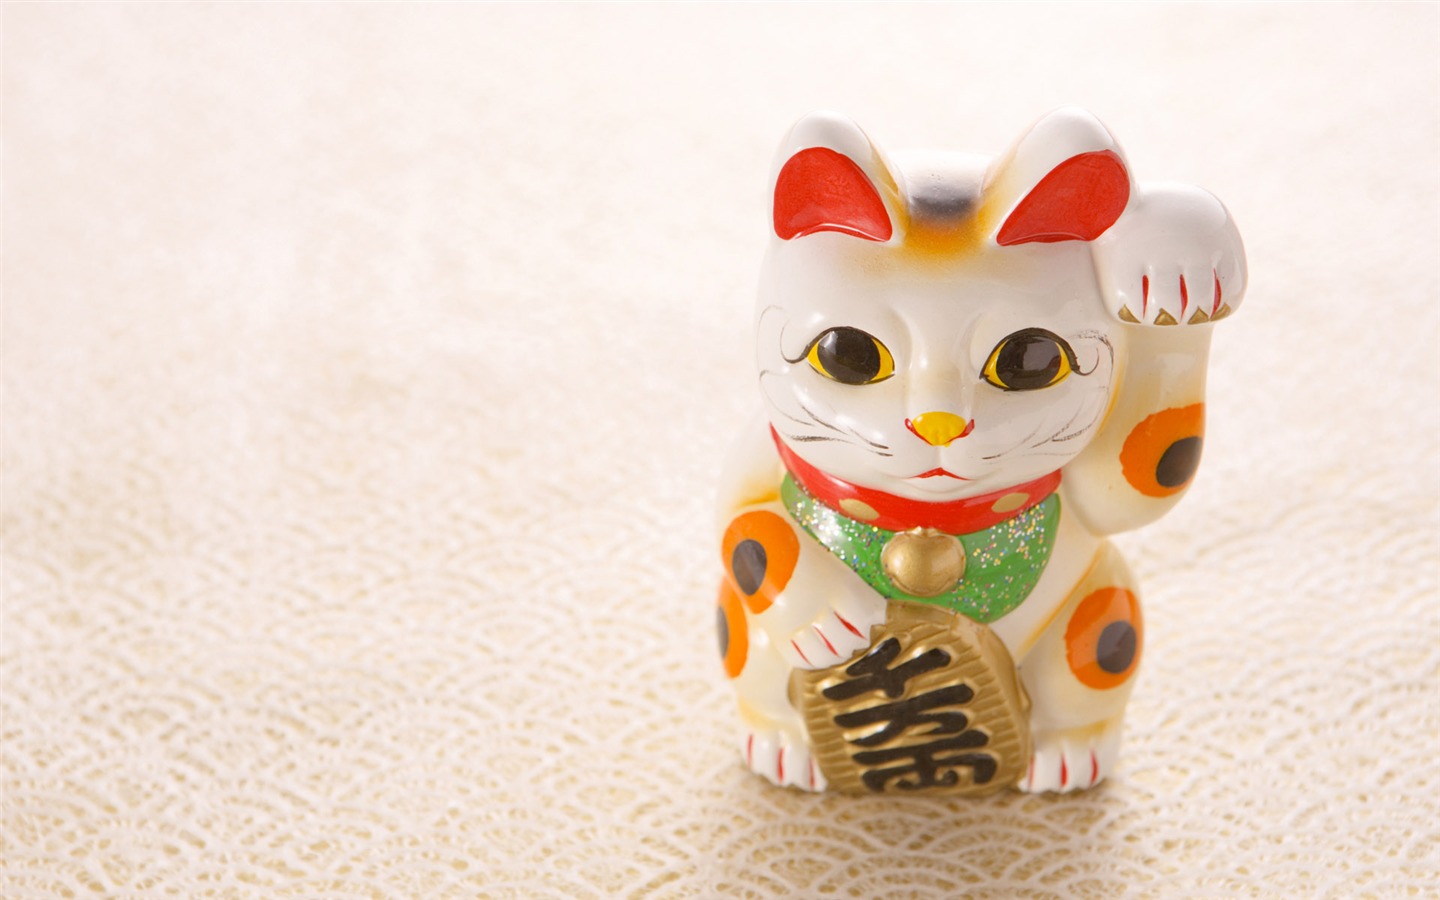 Fondos de año nuevo japonés Cultura (3) #20 - 1440x900